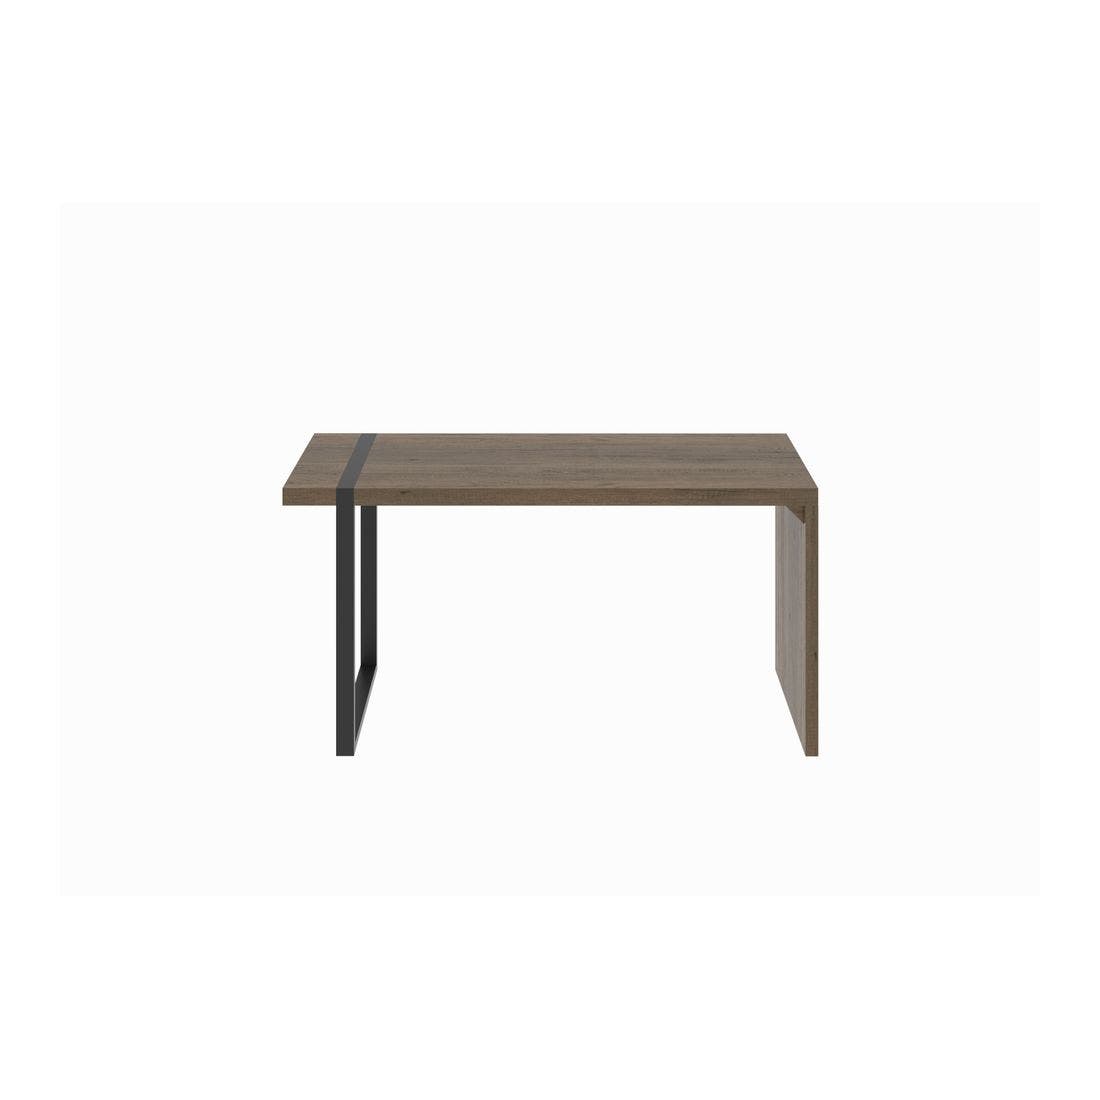 โต๊ะทานอาหาร โต๊ะอาหารขาเหล็กท๊อปไม้ รุ่น Trailor สีสีเข้มลายไม้ธรรมชาติ-SB Design Square